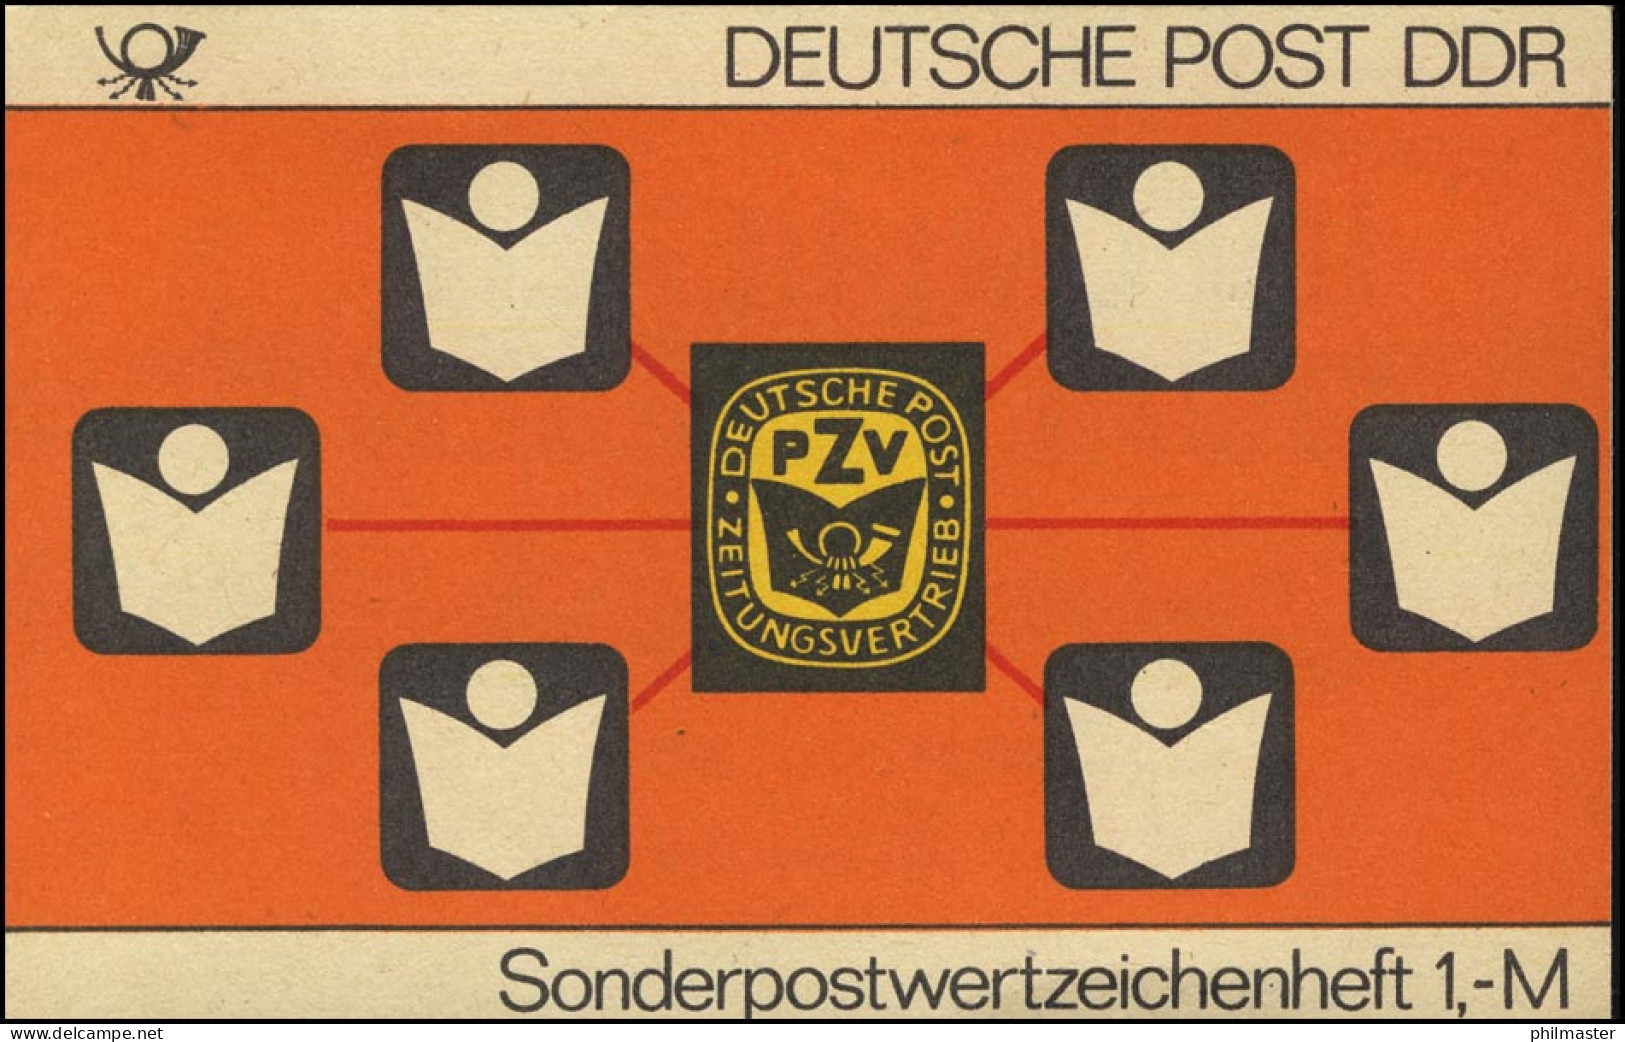 SMHD 24 A PZV Der DDR 1985 - Postfrisch - Markenheftchen